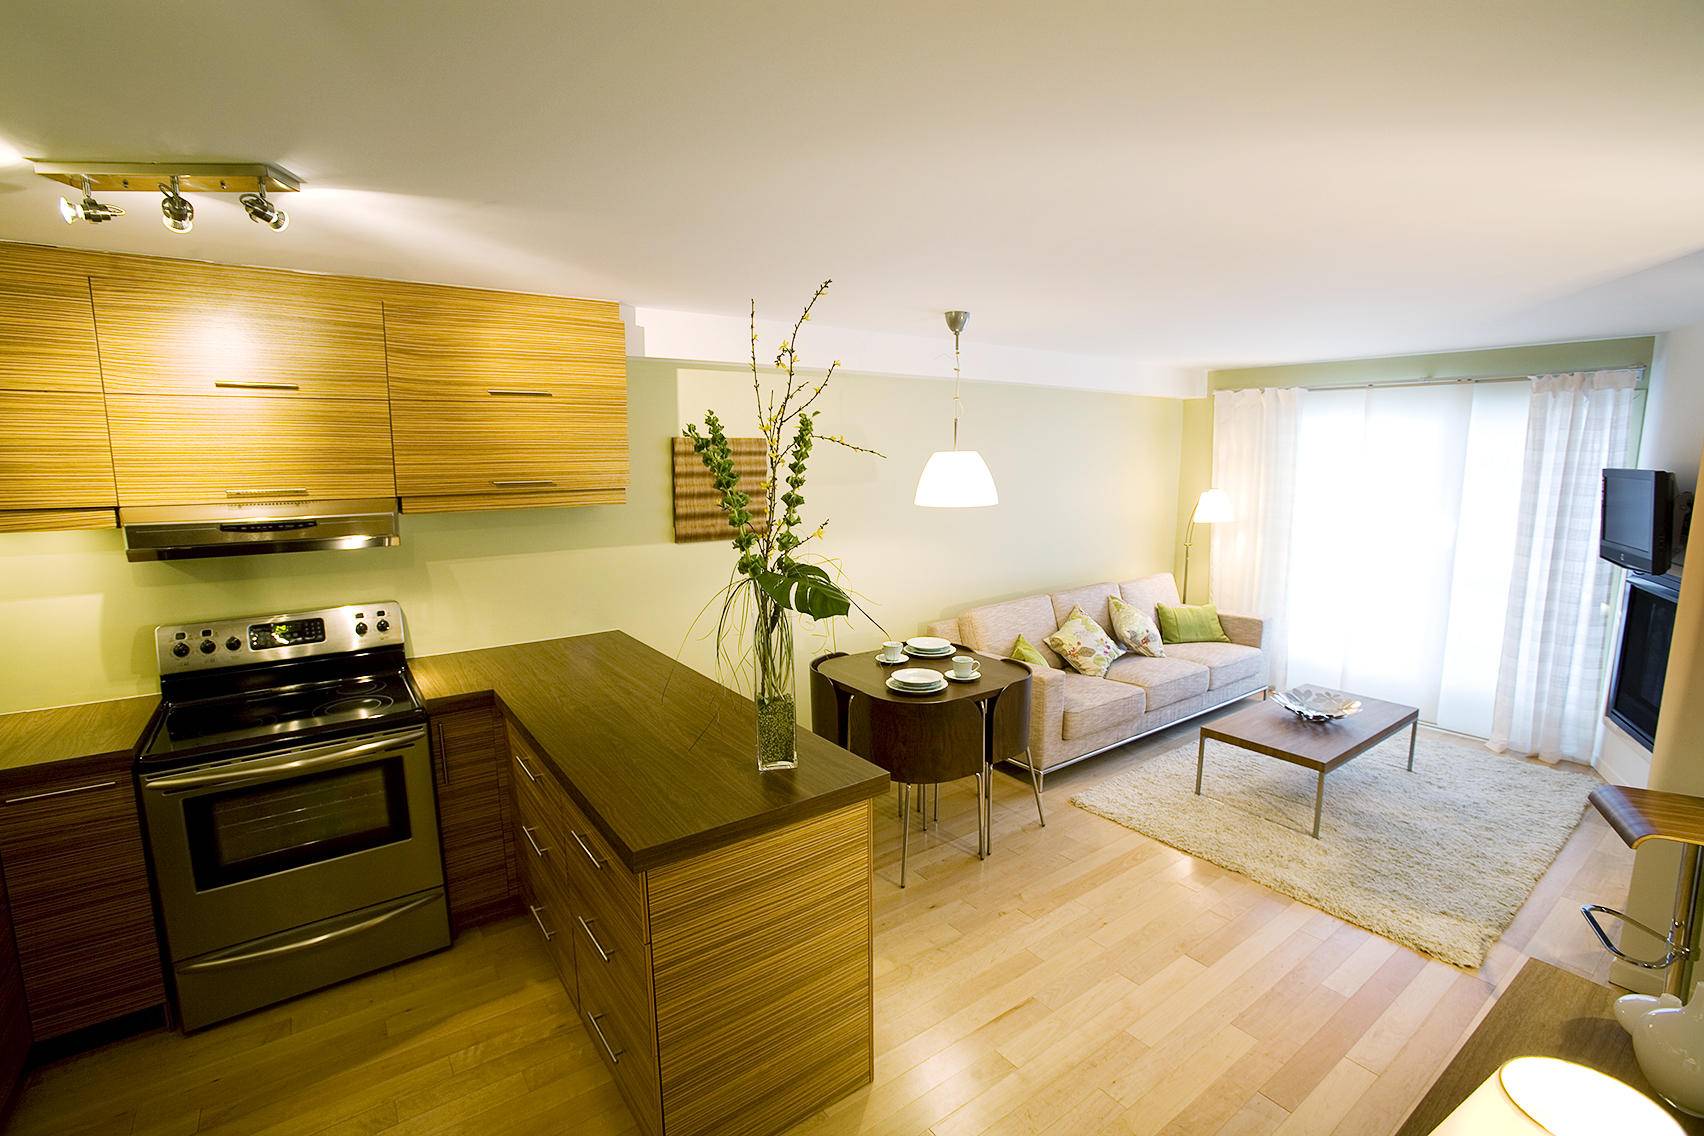 Дизайн кухни-гостиной 20 кв.м. - 70 фото интерьеров, красивые идеи ремонта и отделки